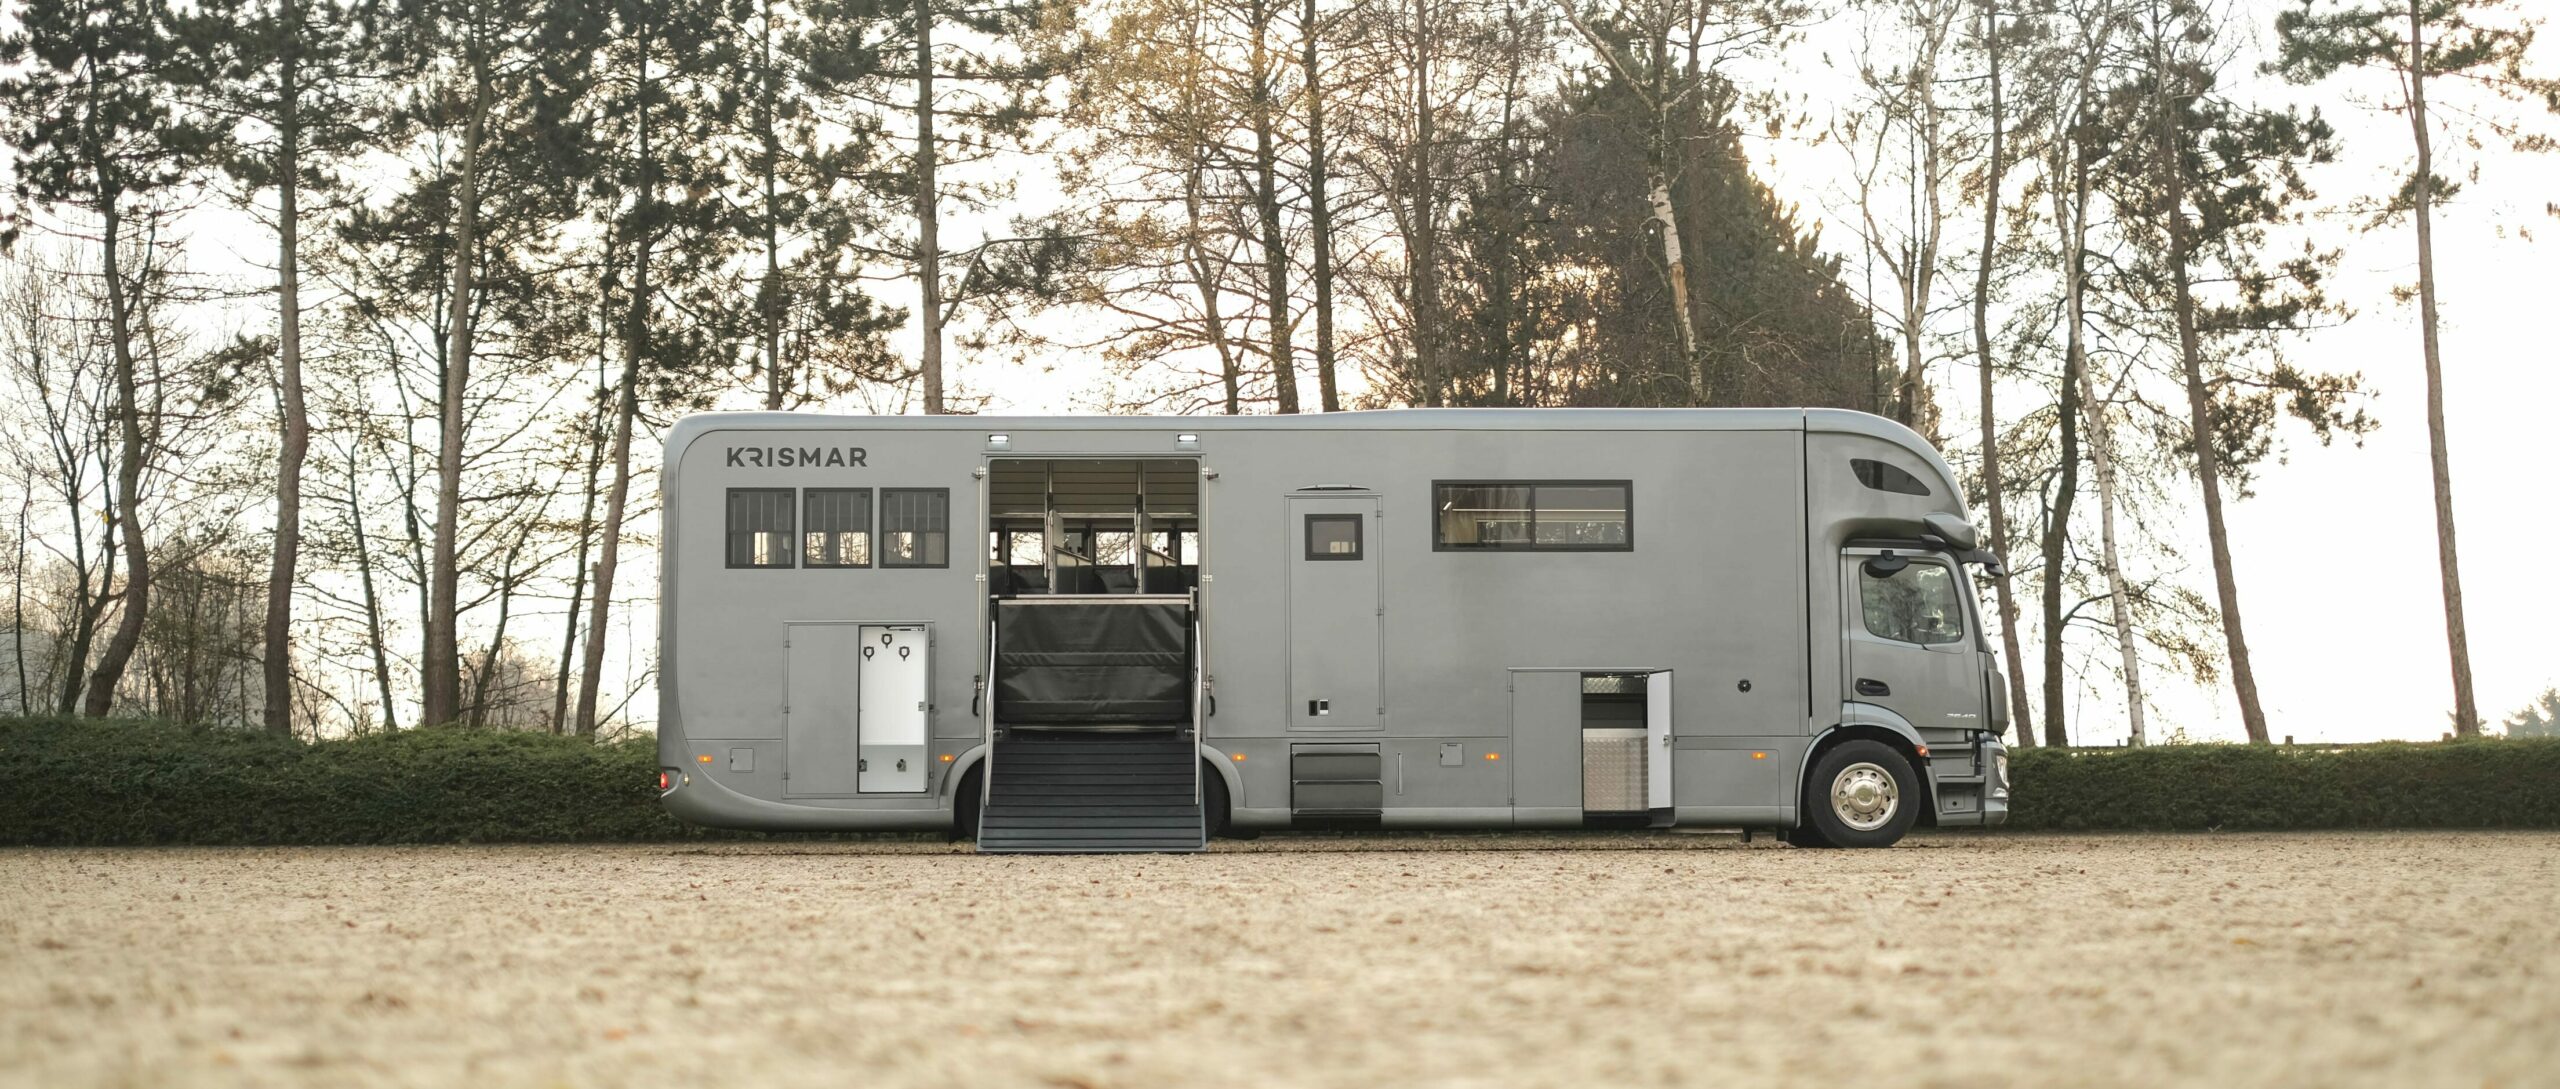 Krismar horsetruck paardenvrachtwagen in een grijze kleur